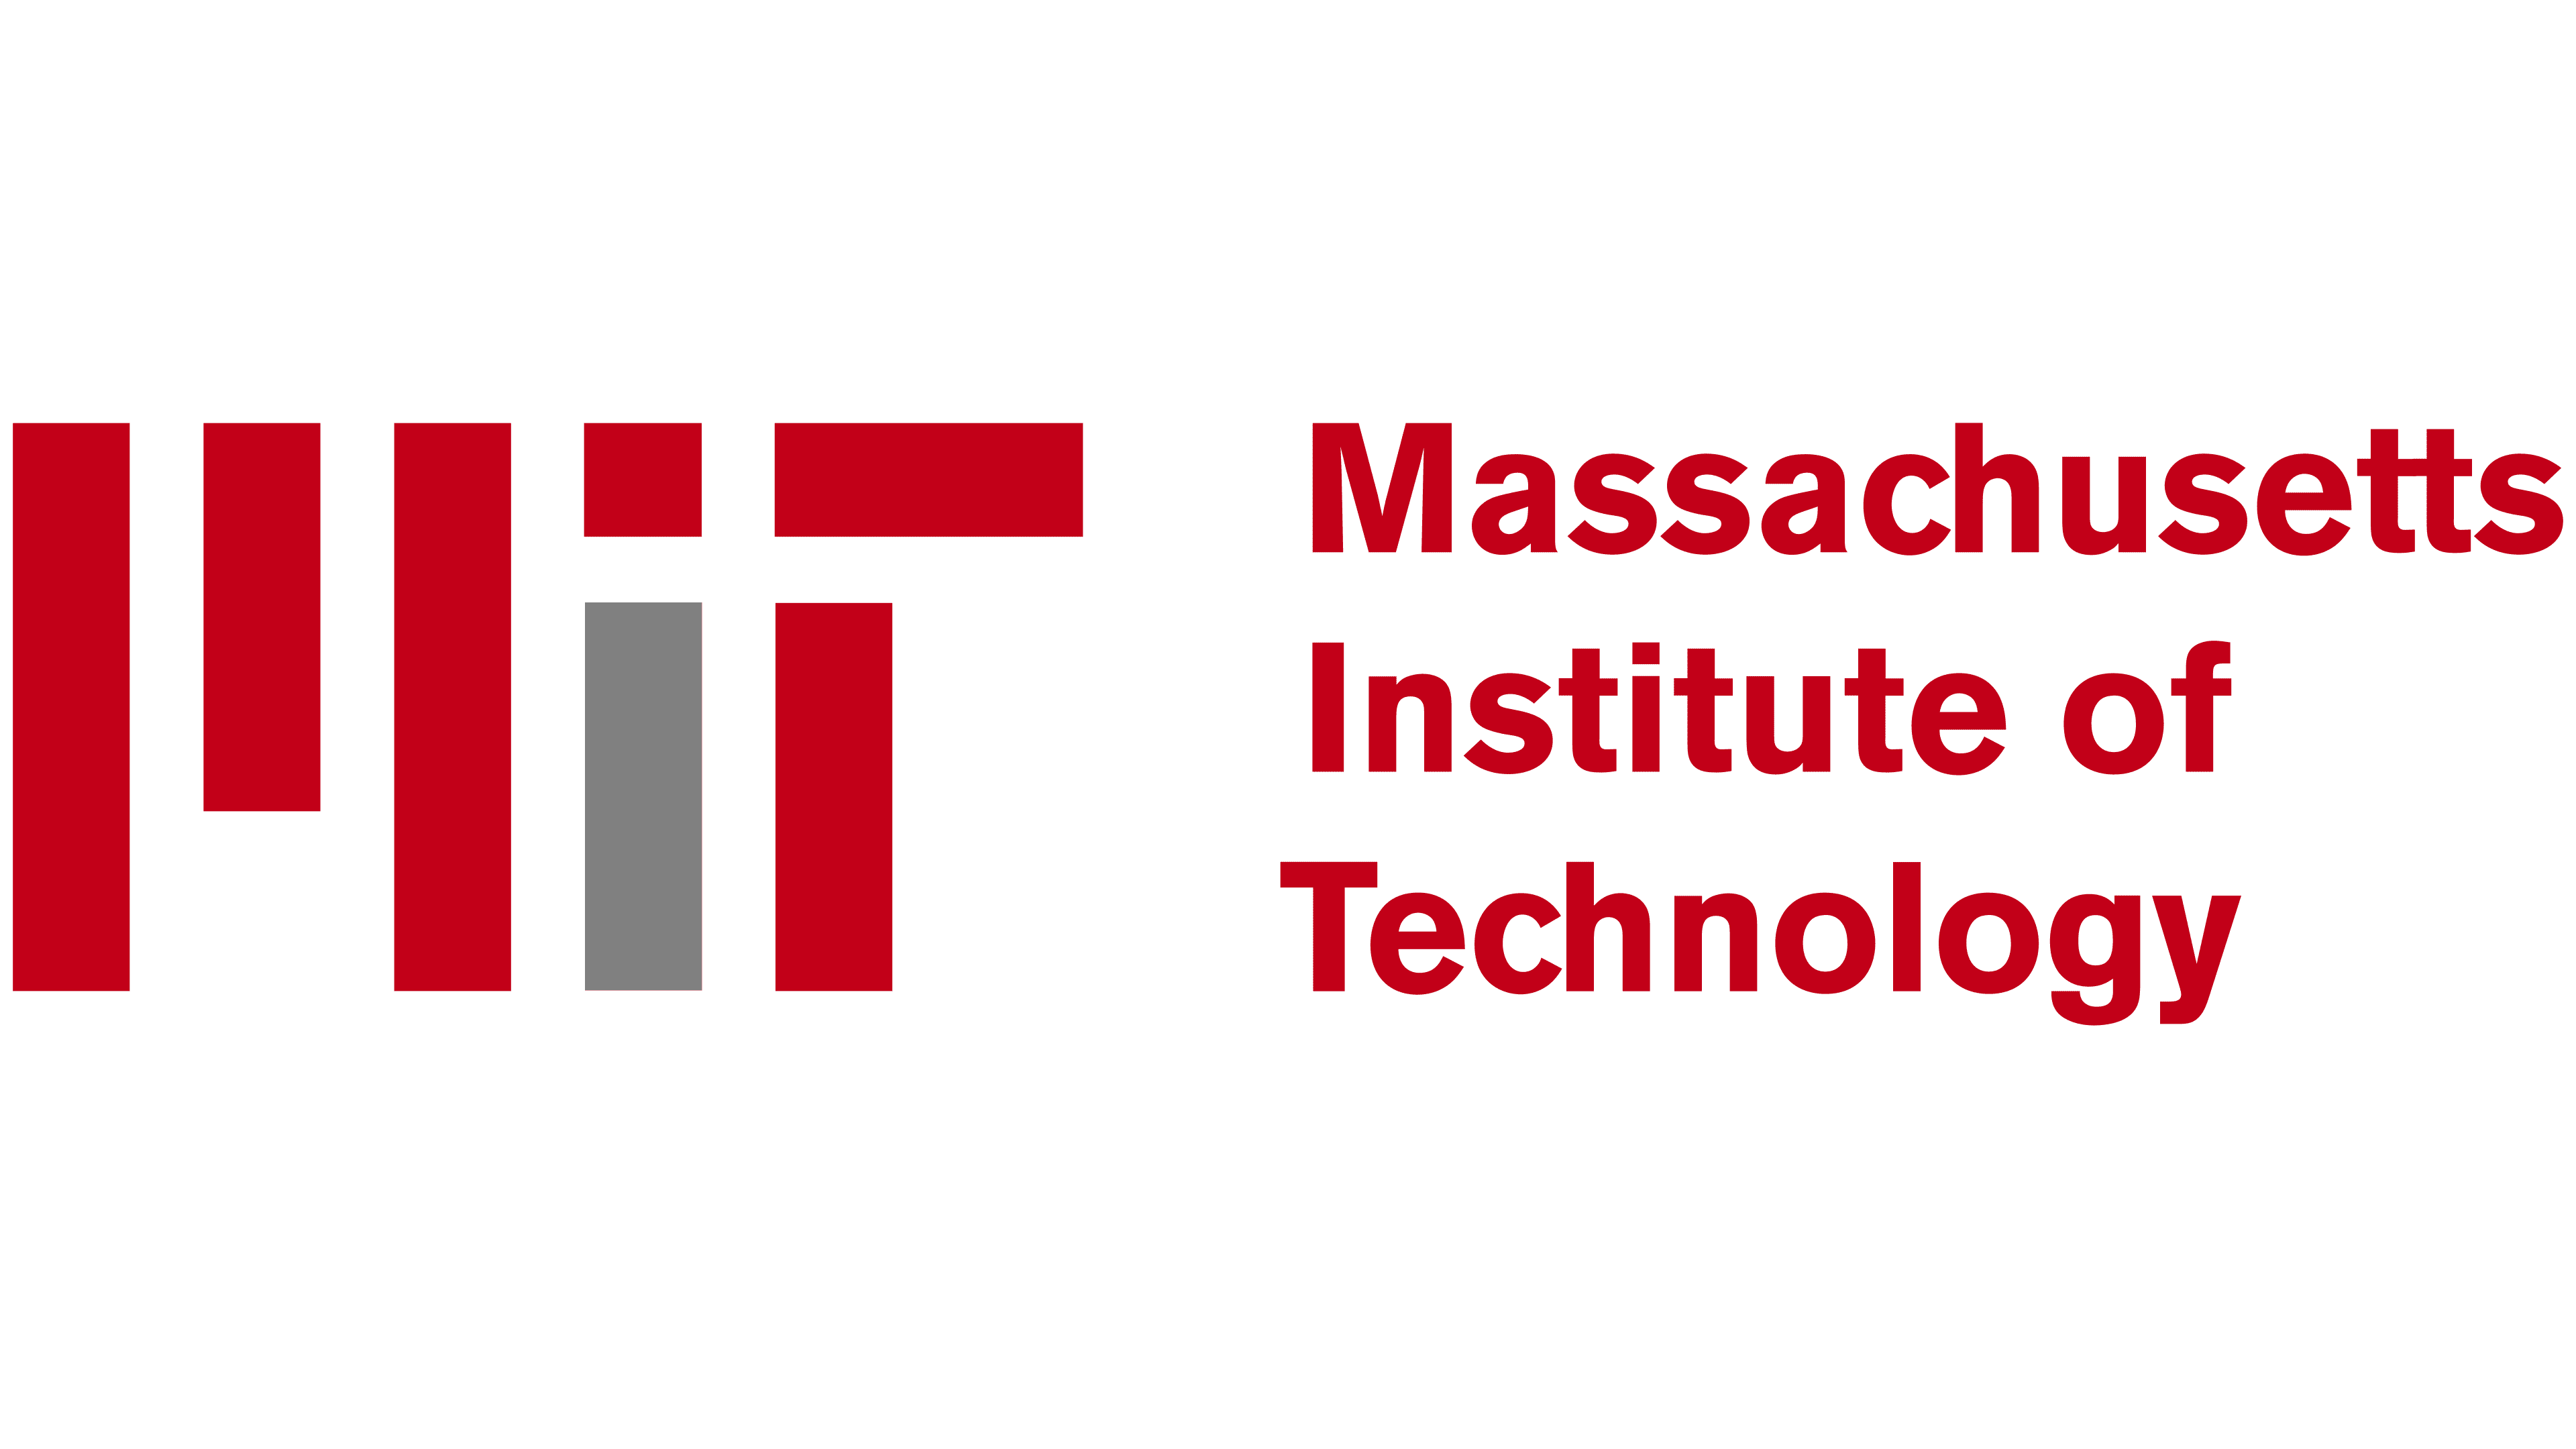 Logo-ul MIT - Storia și semnificația emblemei mărcii